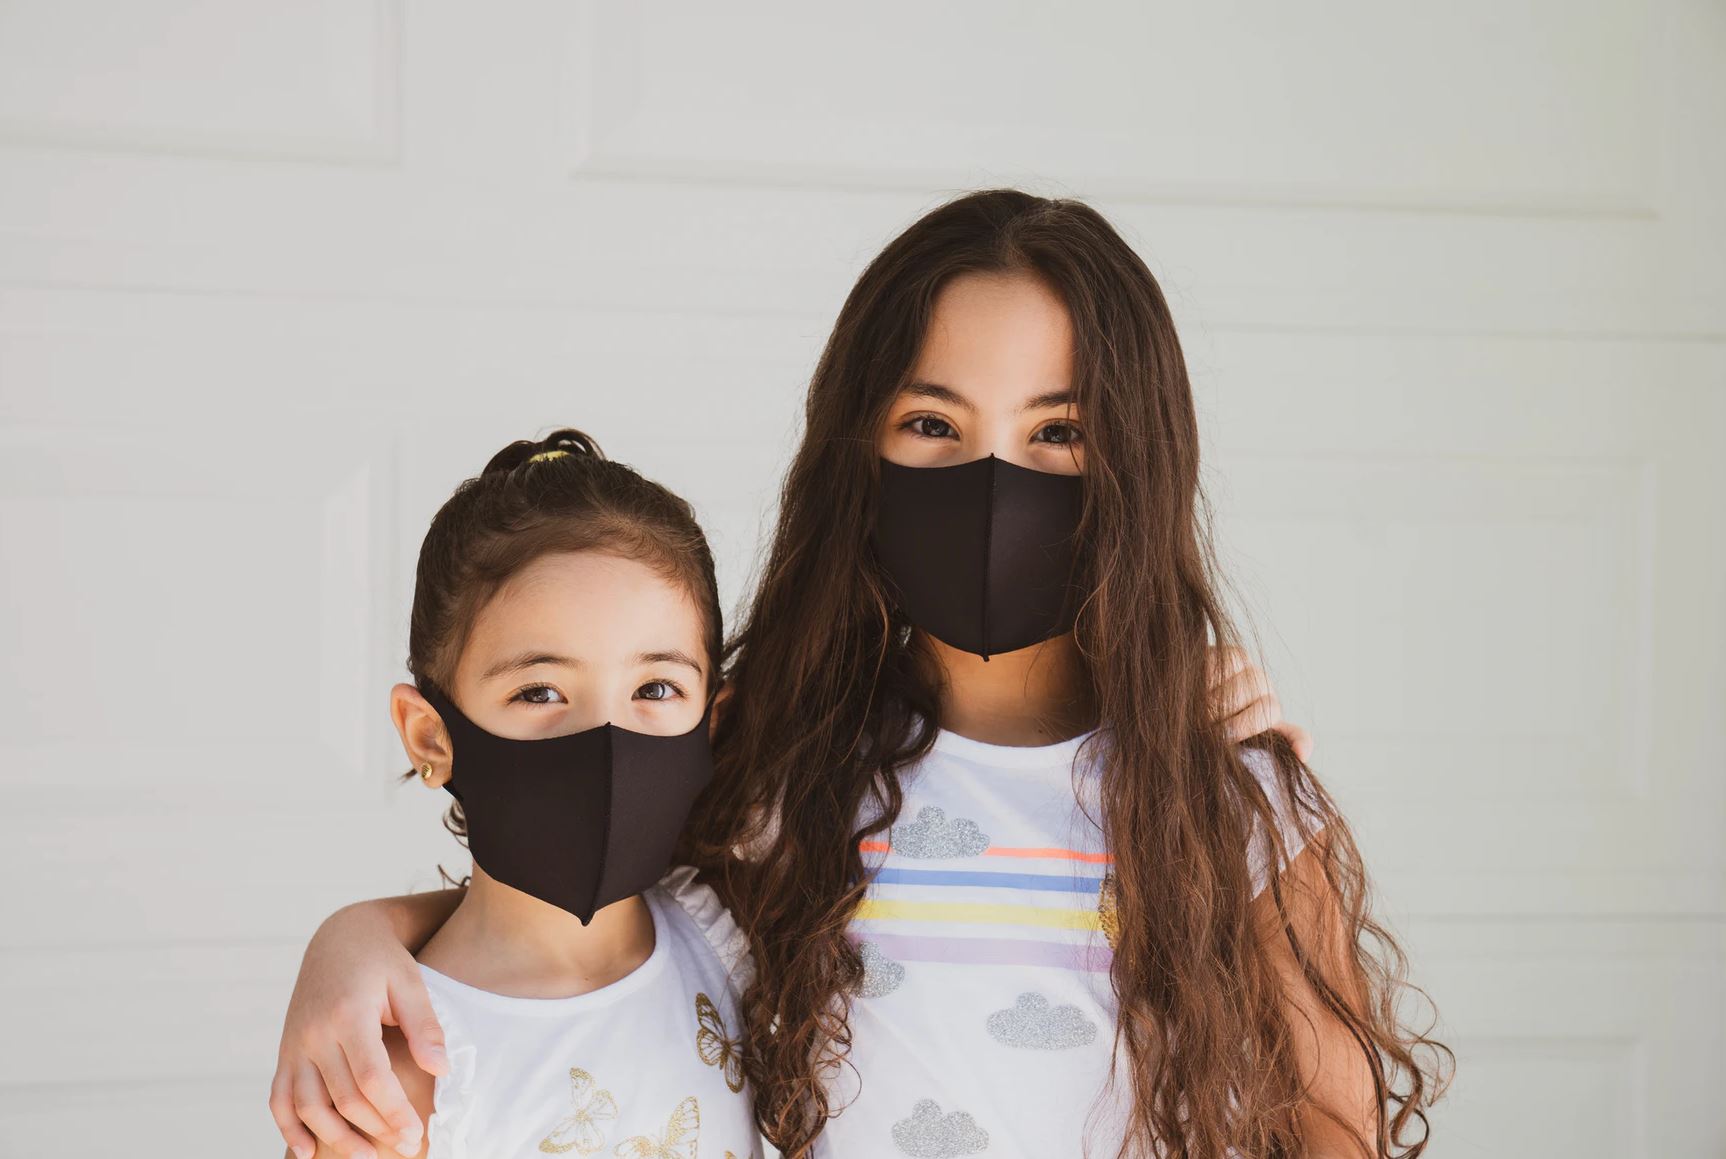 Children in masks